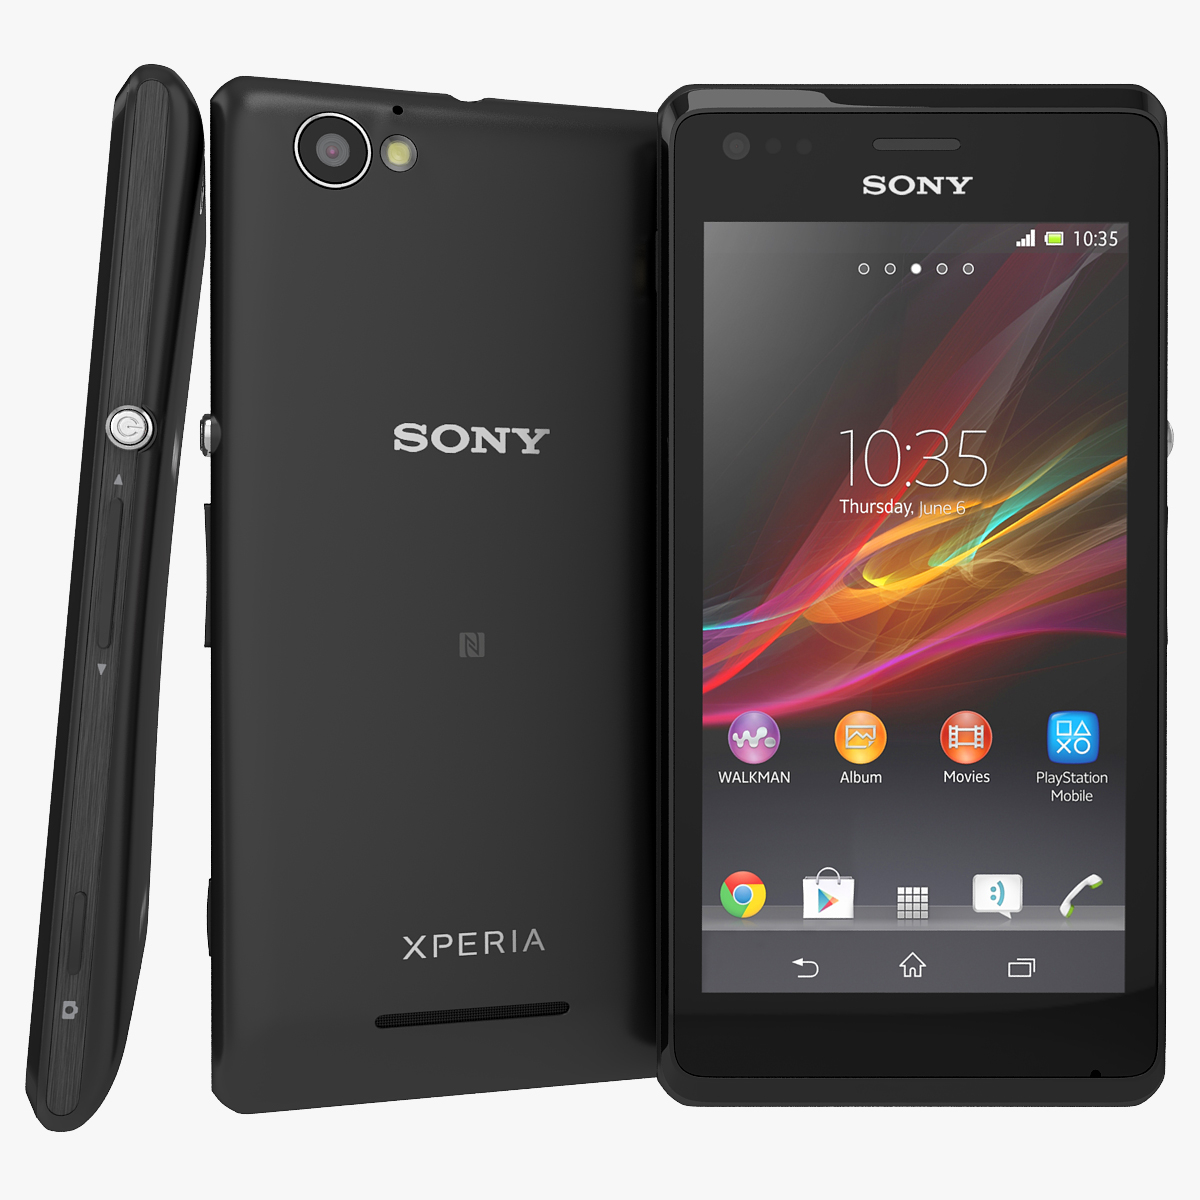 Sony xperia m. Sony Xperia c2005. Sony Xperia m c2005. Sony Xperia c1905. Sony Xperia c6503.